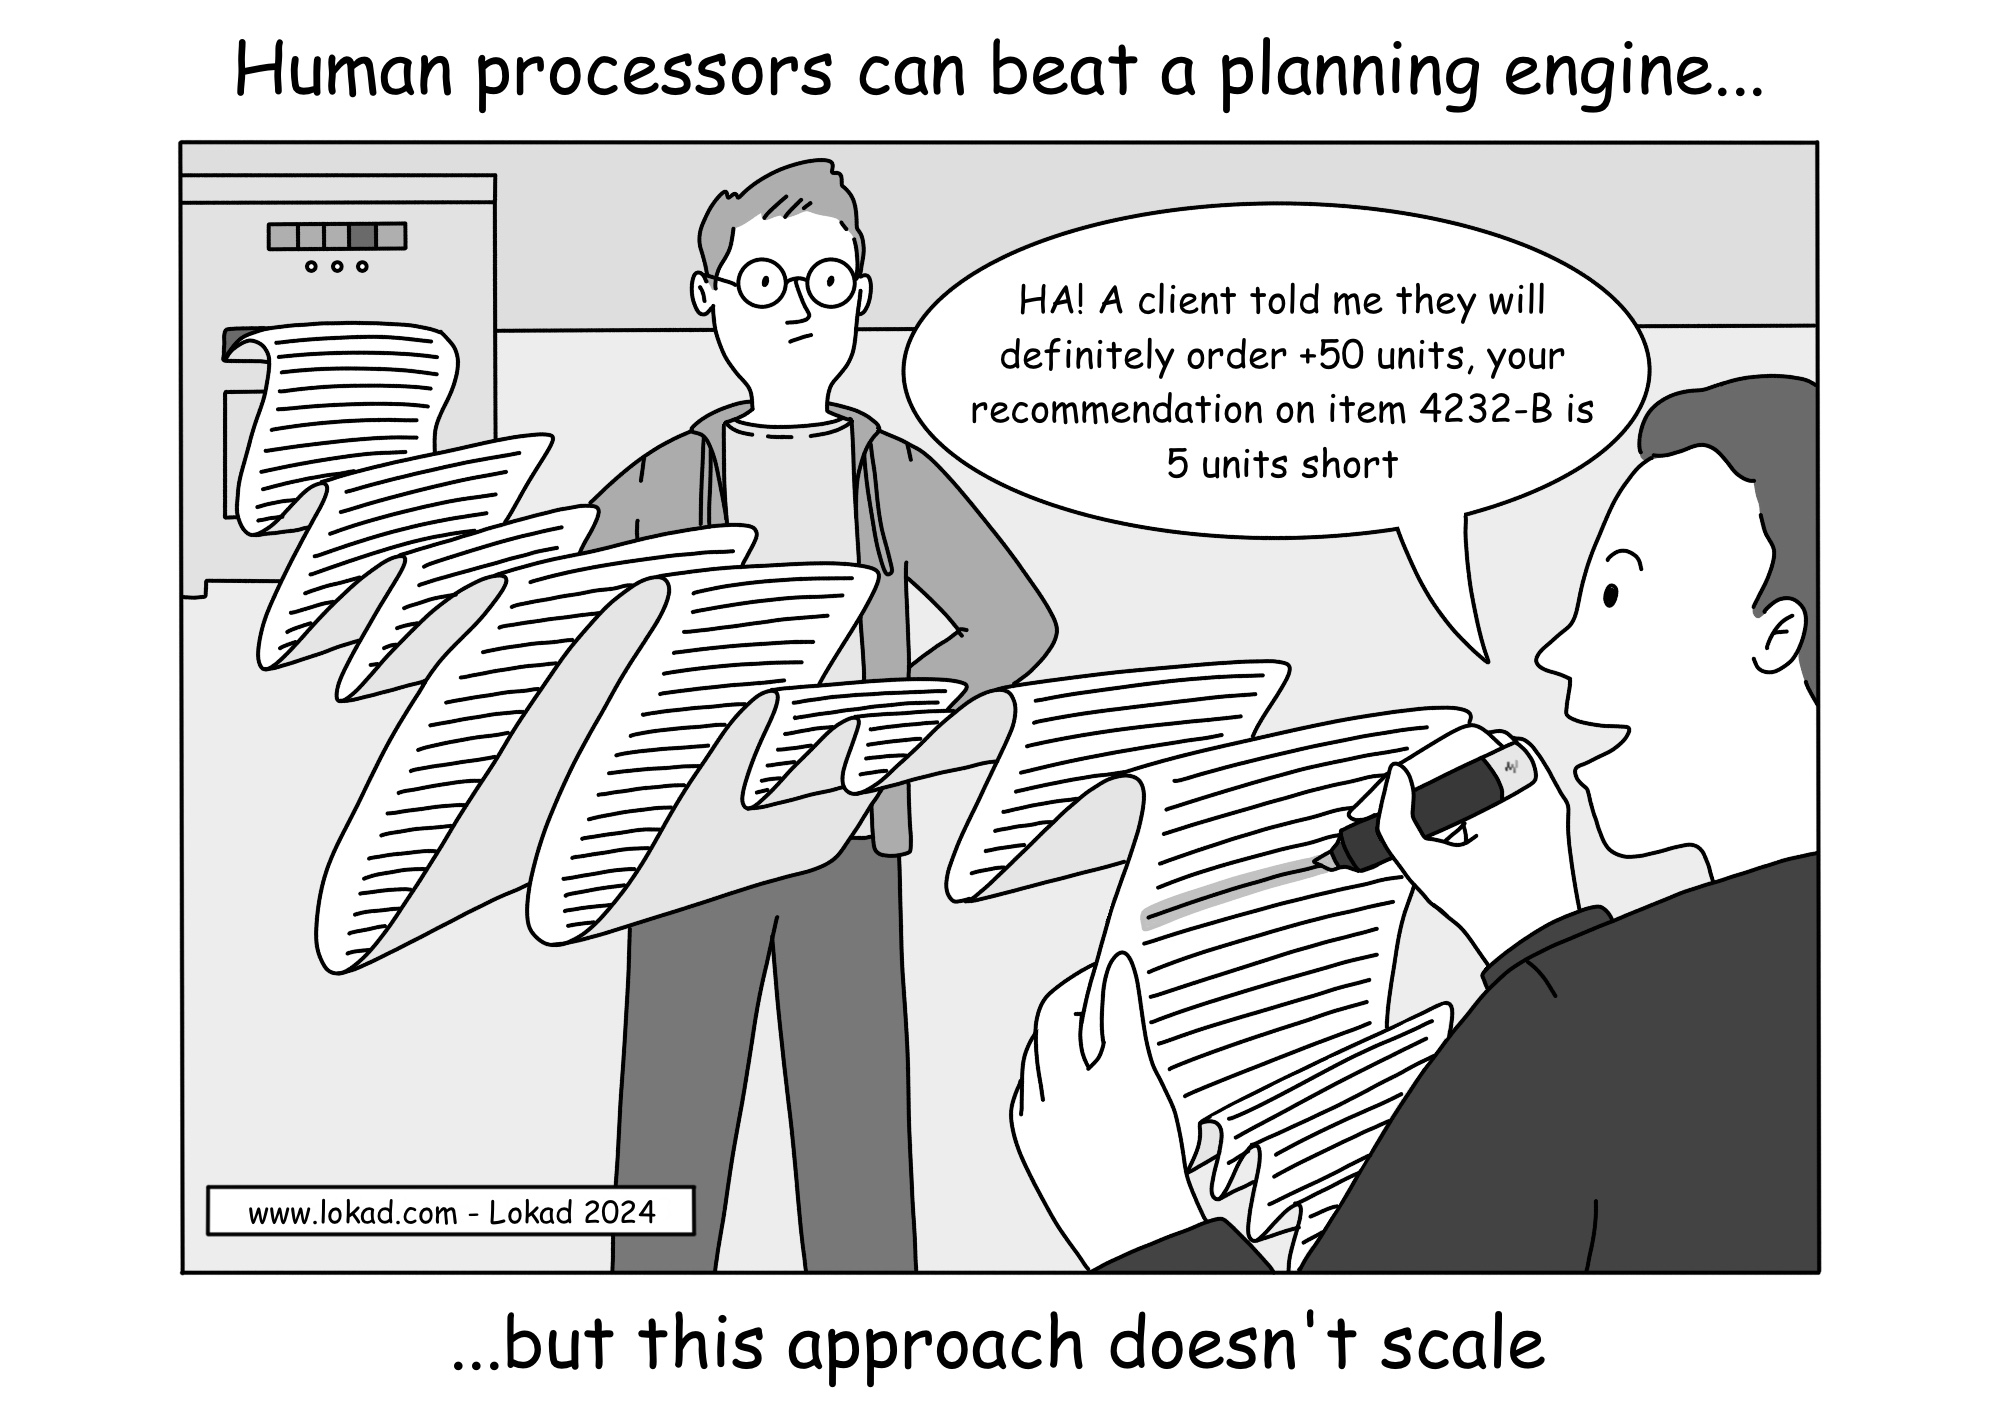 Menschliche Prozessoren können eine Planungs-Engine schlagen.